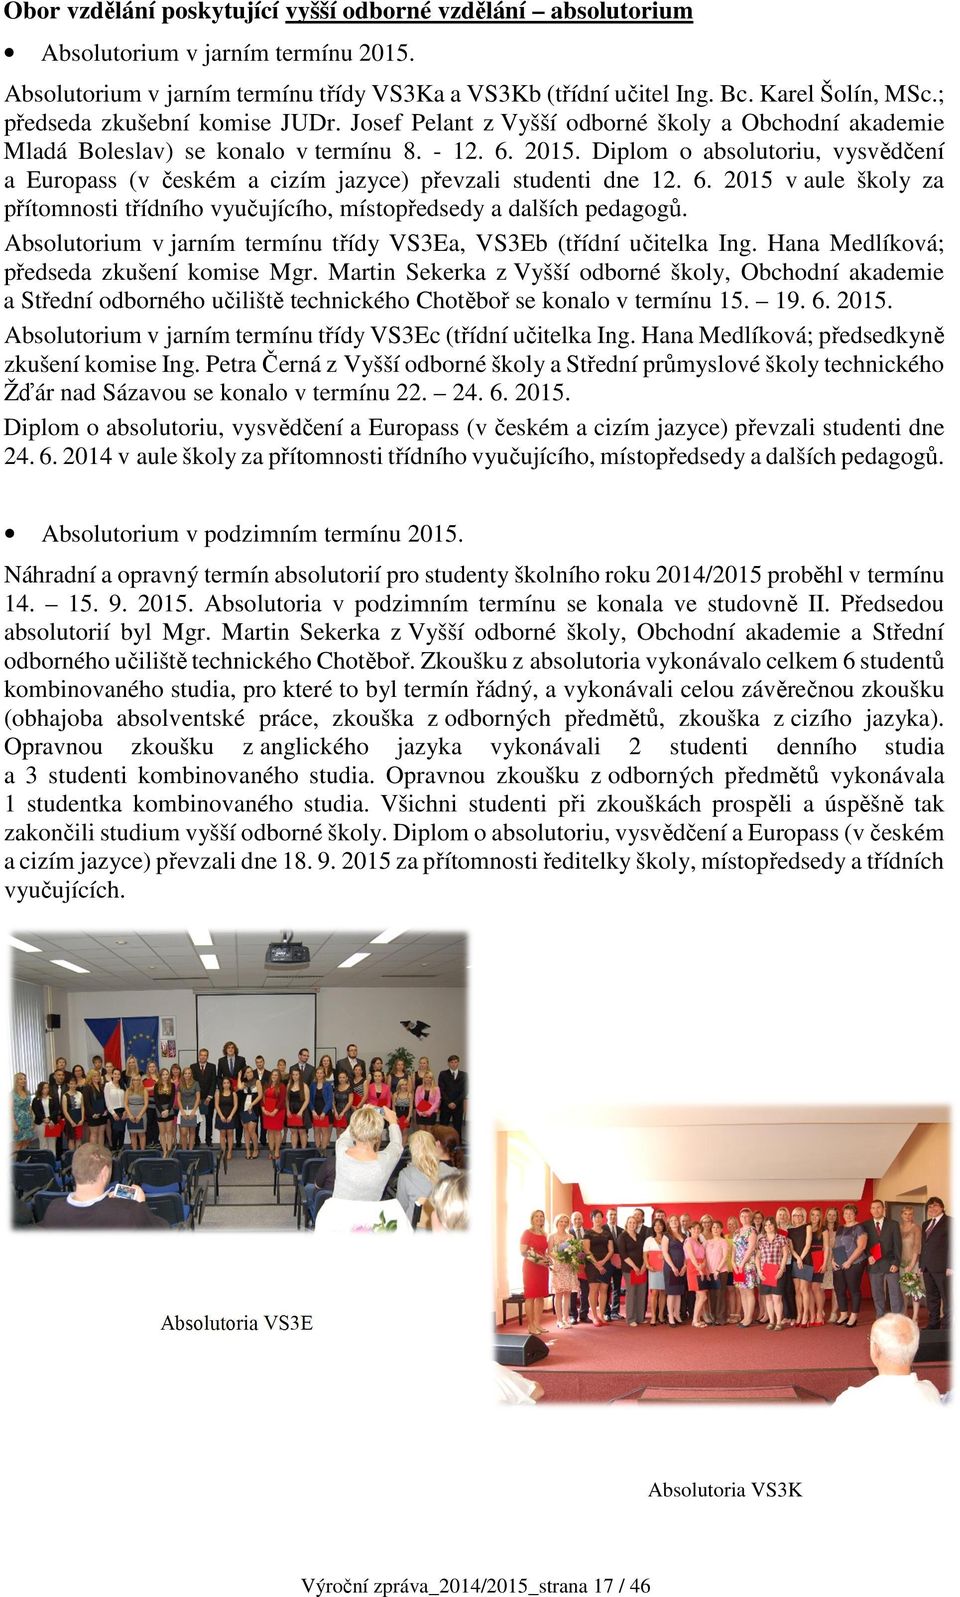 Diplom o absolutoriu, vysvědčení a Europass (v českém a cizím jazyce) převzali studenti dne 12. 6. 2015 v aule školy za přítomnosti třídního vyučujícího, místopředsedy a dalších pedagogů.